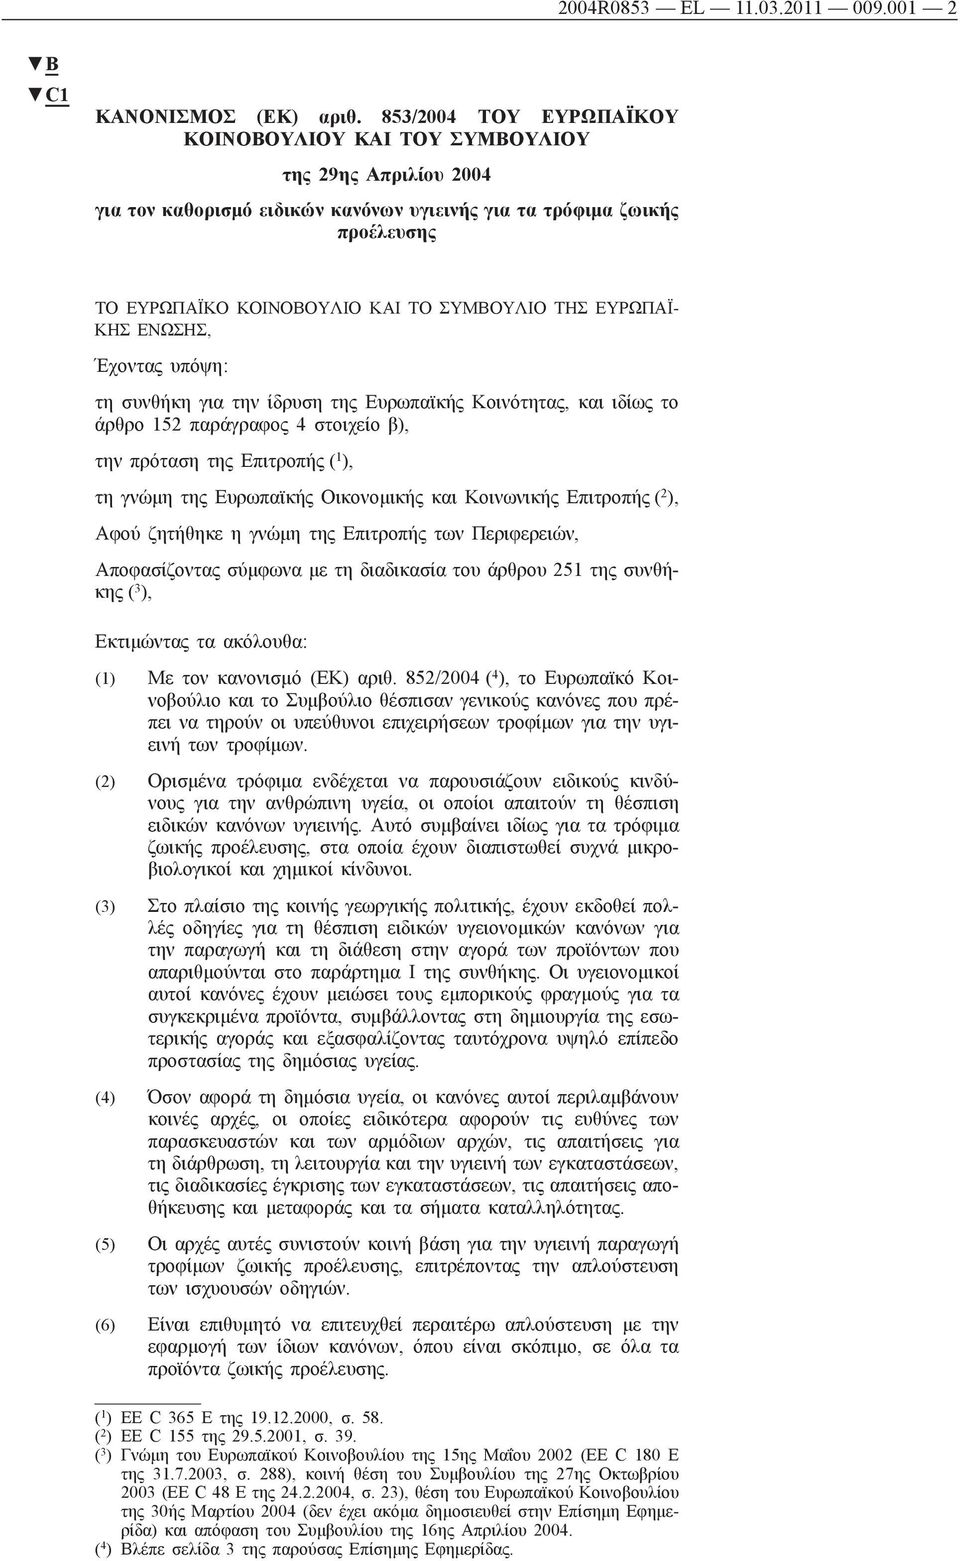 ΤΗΣ ΕΥΡΩΠΑΪ ΚΗΣ ΕΝΩΣΗΣ, Έχοντας υπόψη: τη συνθήκη για την ίδρυση της Ευρωπαϊκής Κοινότητας, ιδίως το άρθρο 152 παράγραφος 4 στοιχείο β), την πρόταση της Επιτροπής ( 1 ), τη γνώμη της Ευρωπαϊκής